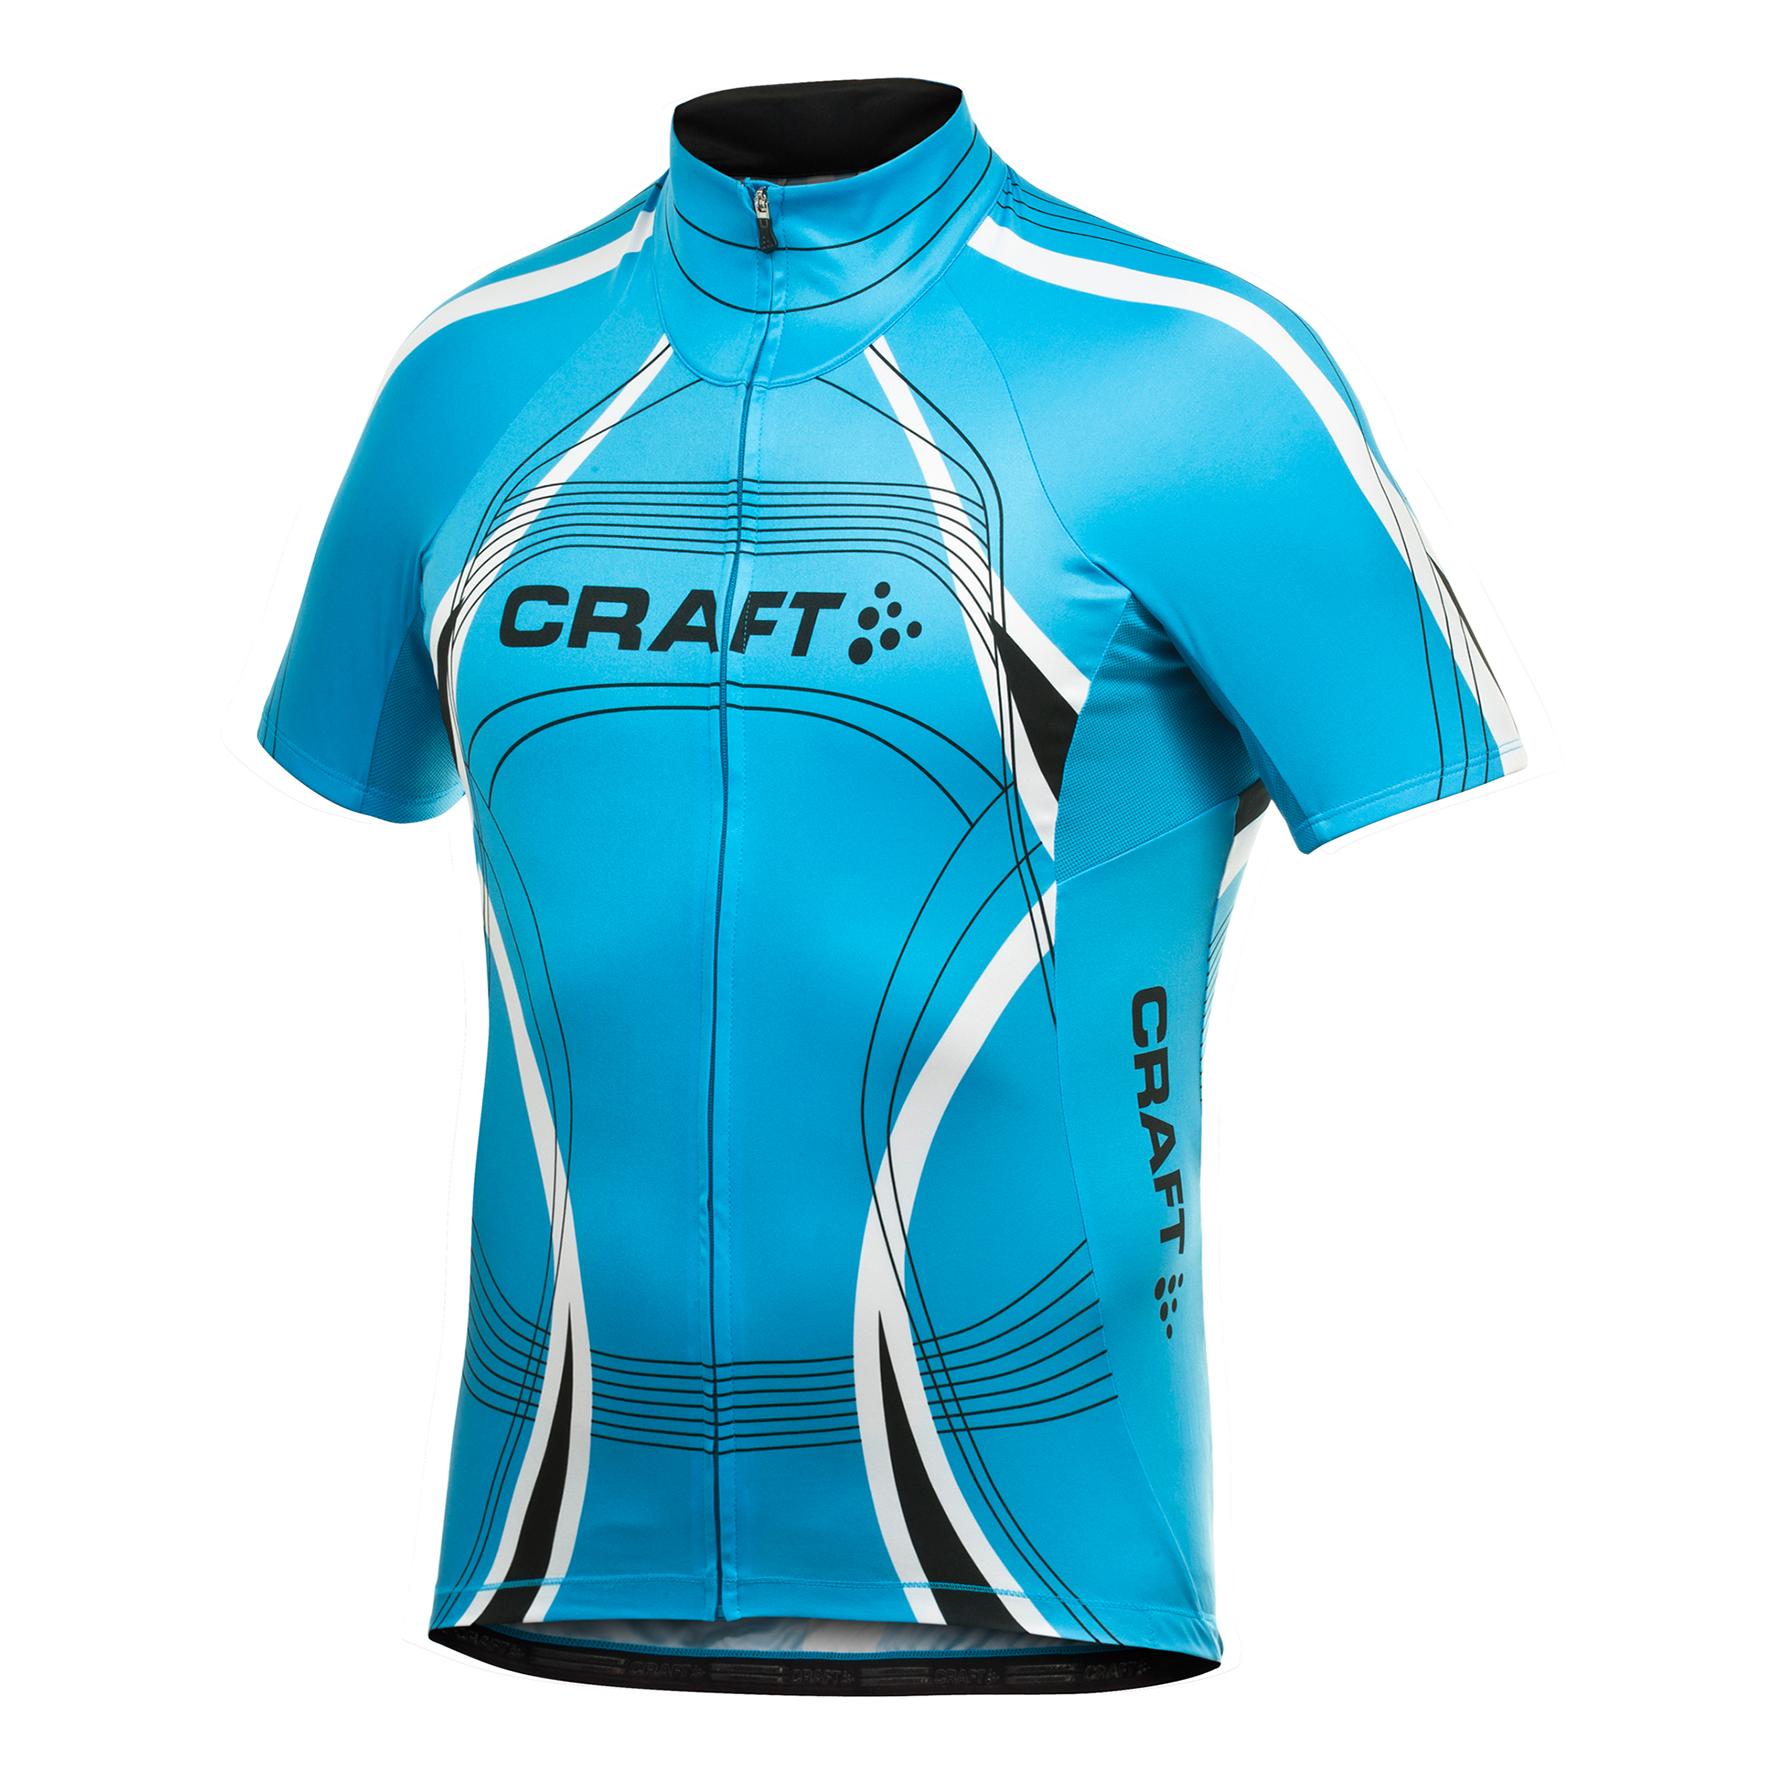 Foto Maillot para ciclismo Craft Performance Bike azul para hombre , s foto 944611